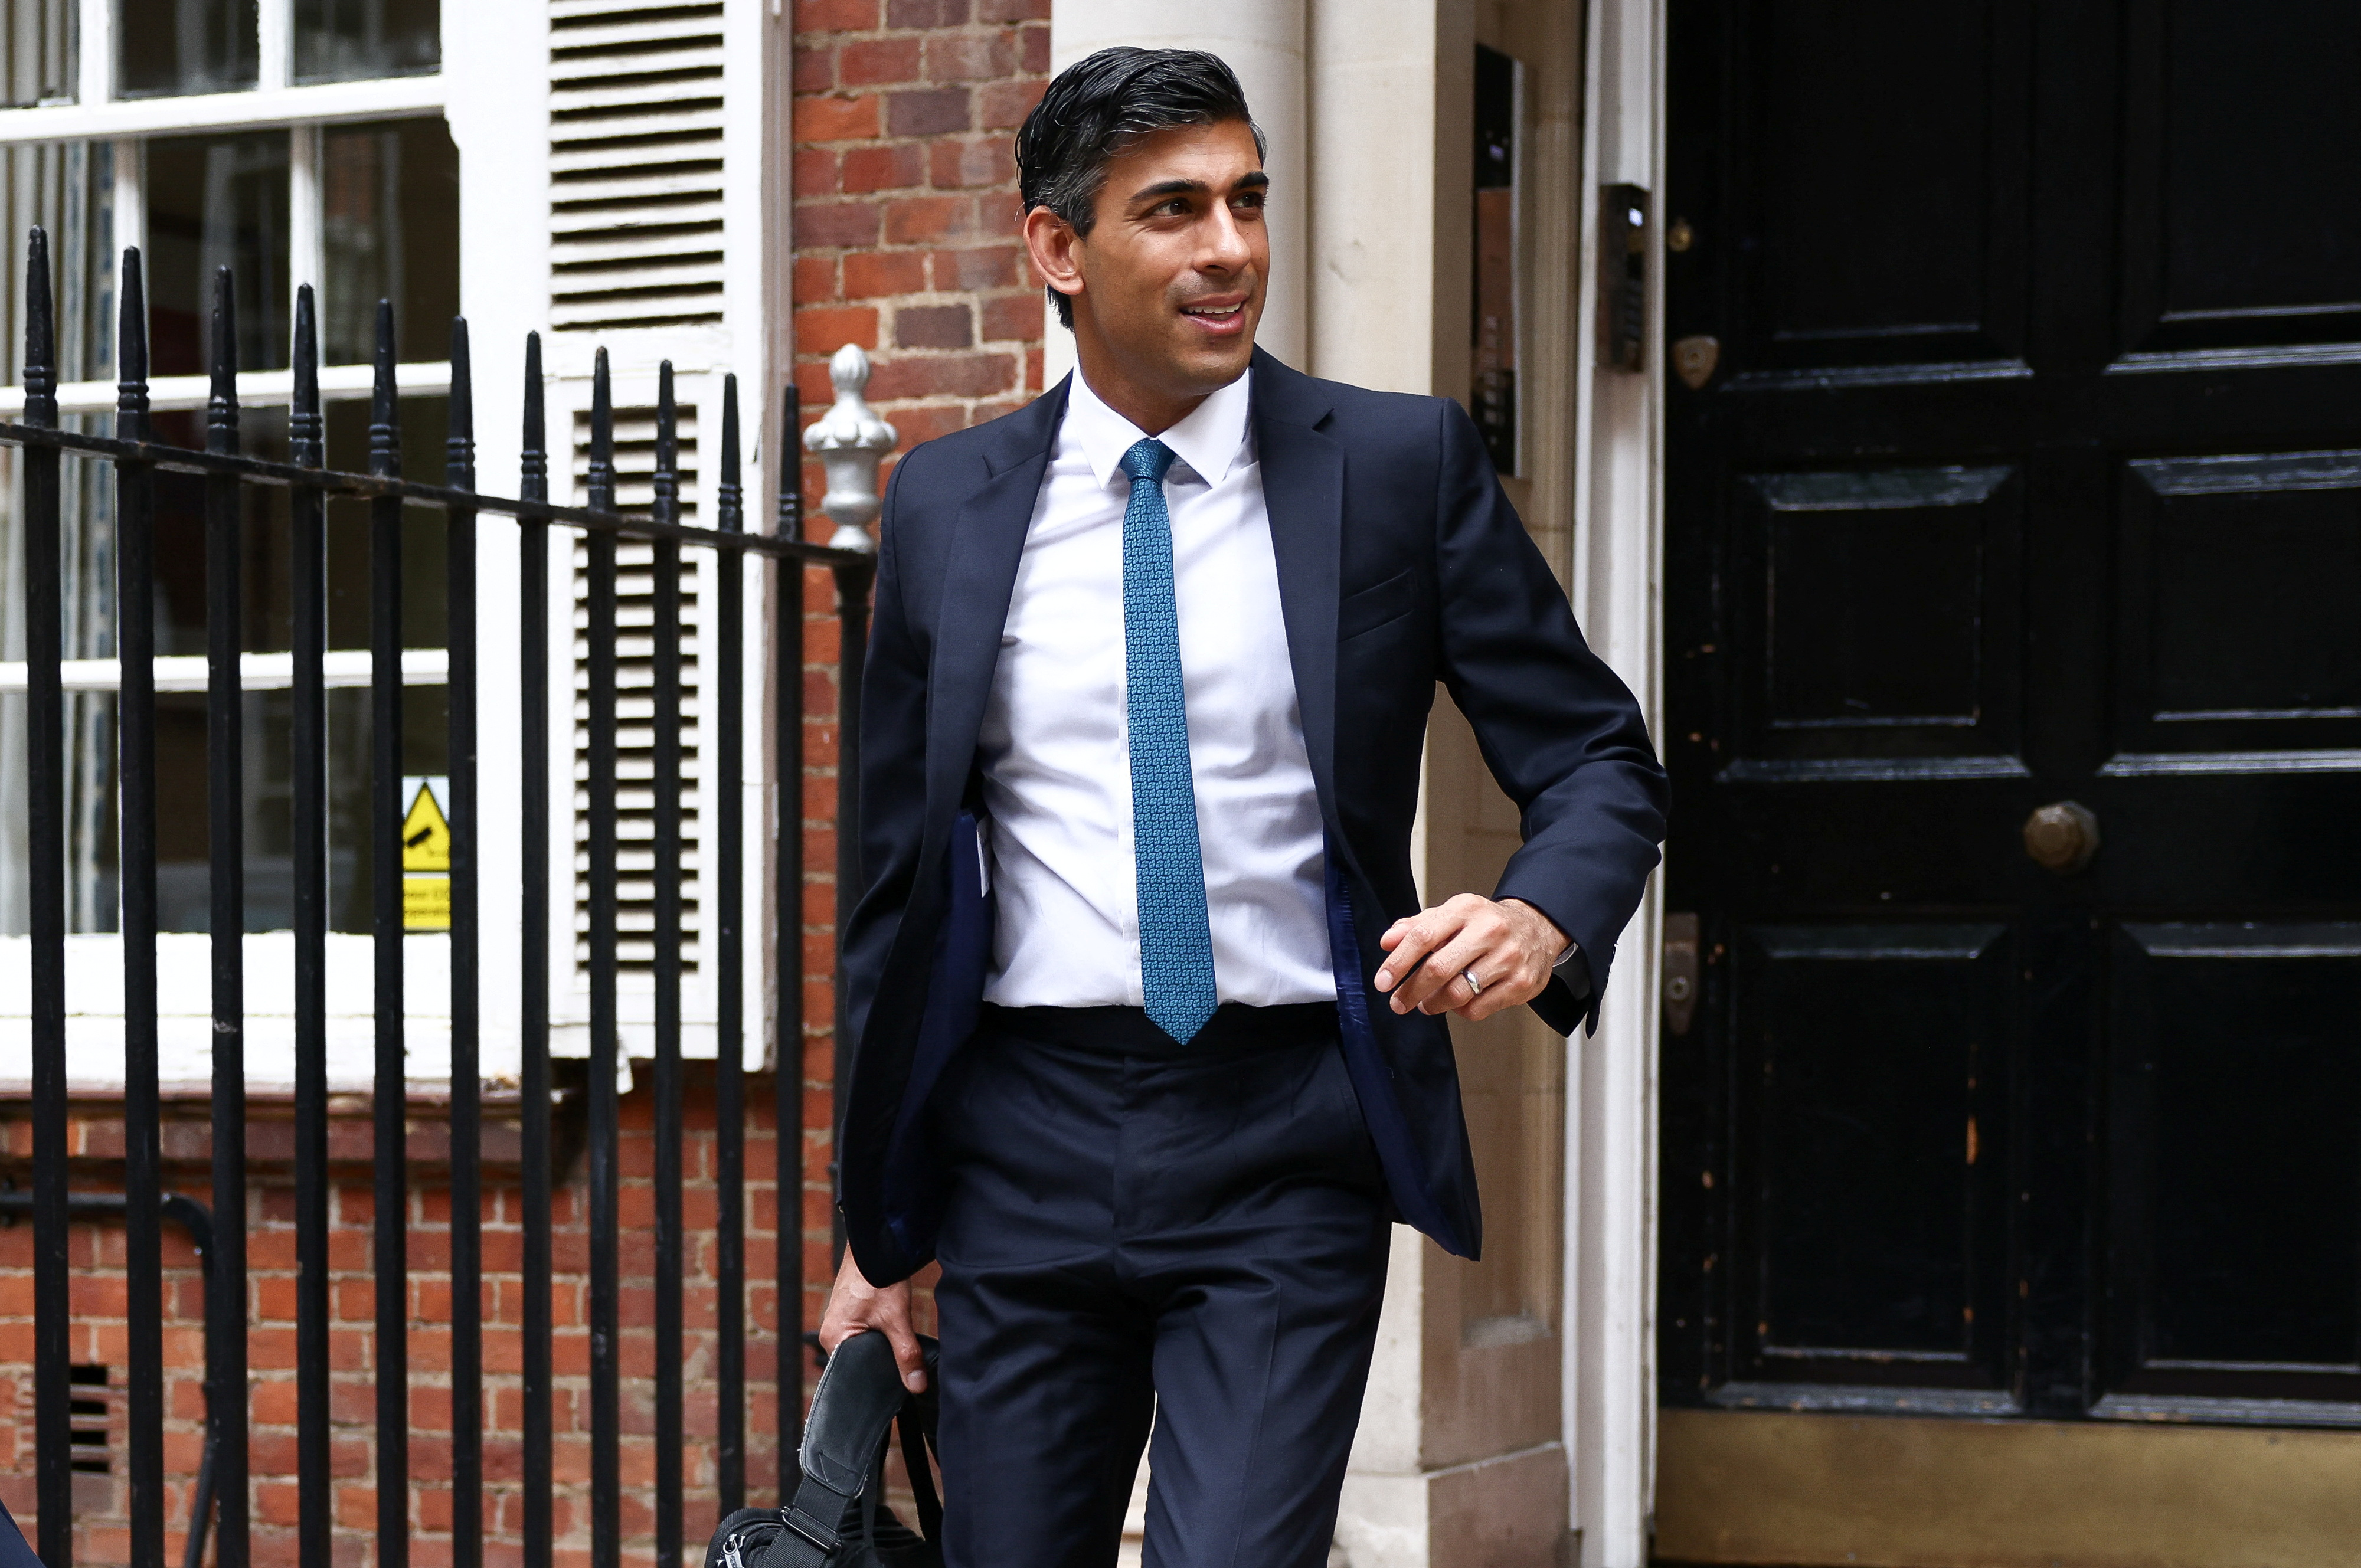 El candidato conservador Rishi Sunak sale de un edificio de oficinas en Londres, Gran Bretaña, el 20 de julio de 2022. REUTERS/Henry Nicholls